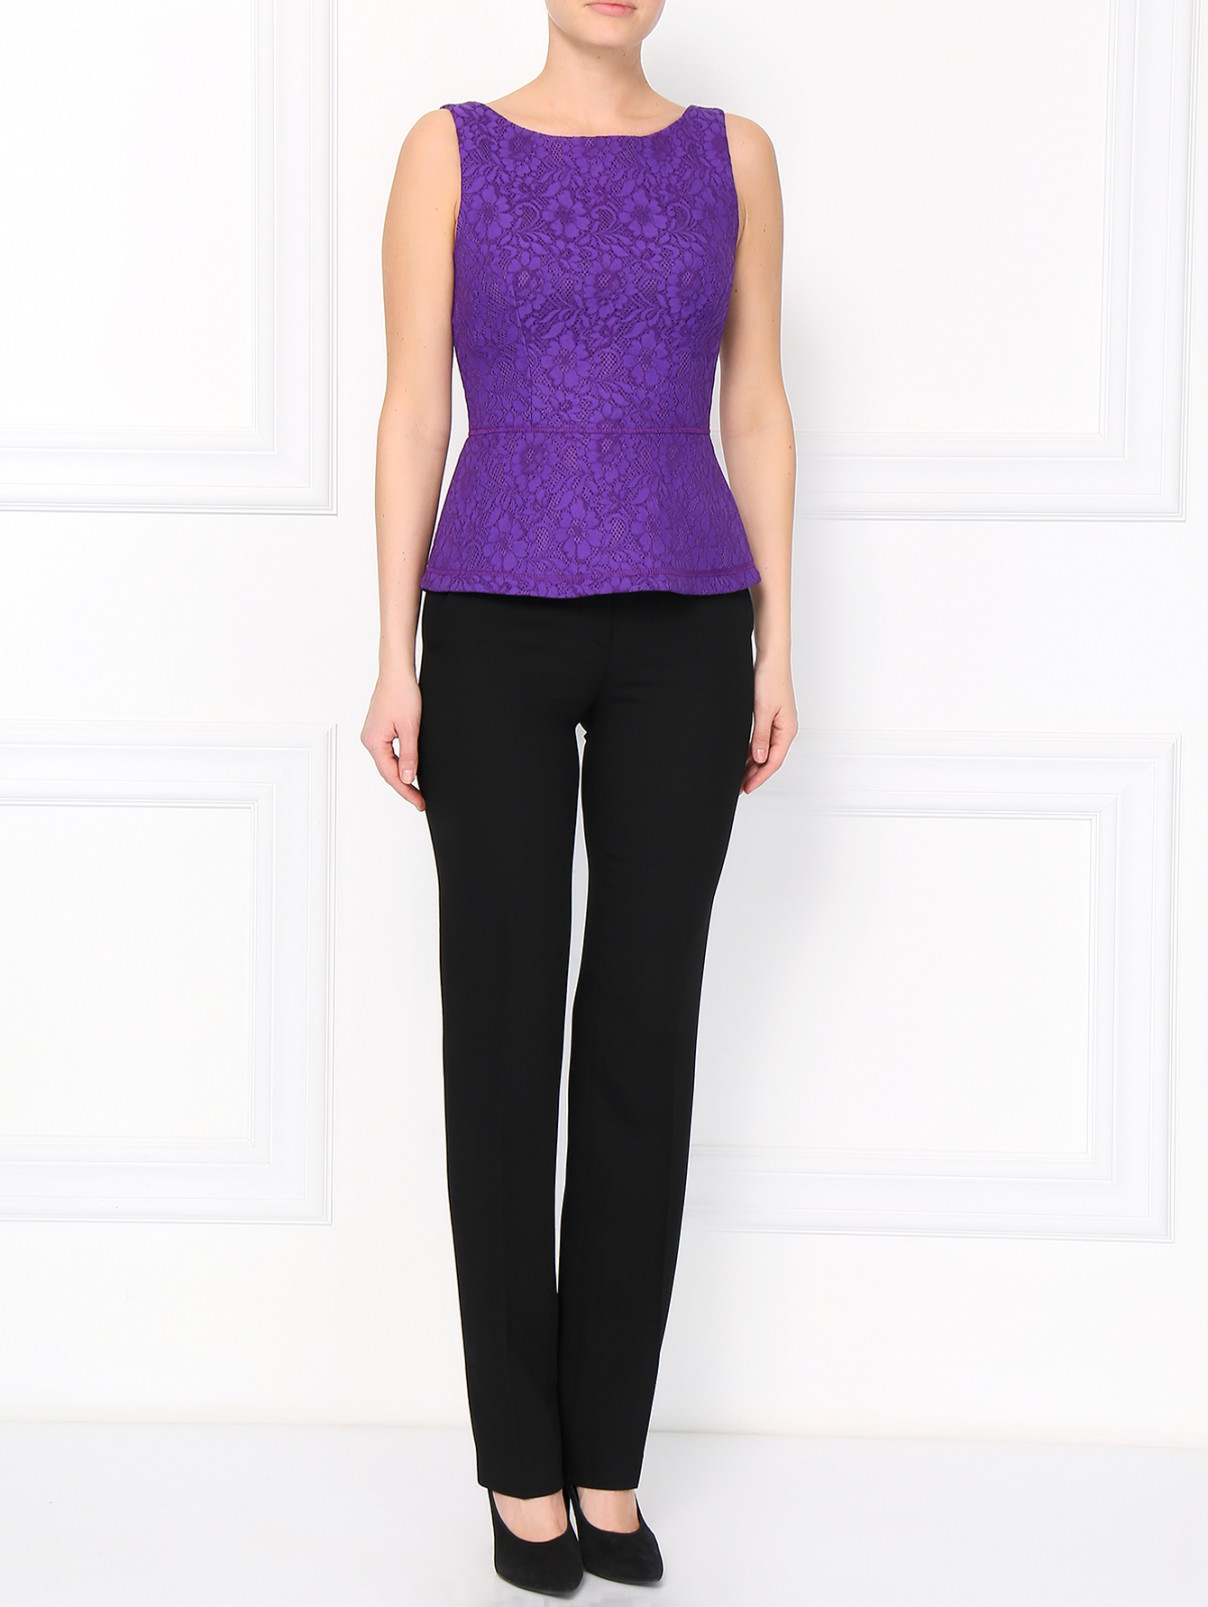 Зауженные брюки из шерсти Moschino Boutique  –  Модель Общий вид  – Цвет:  Черный